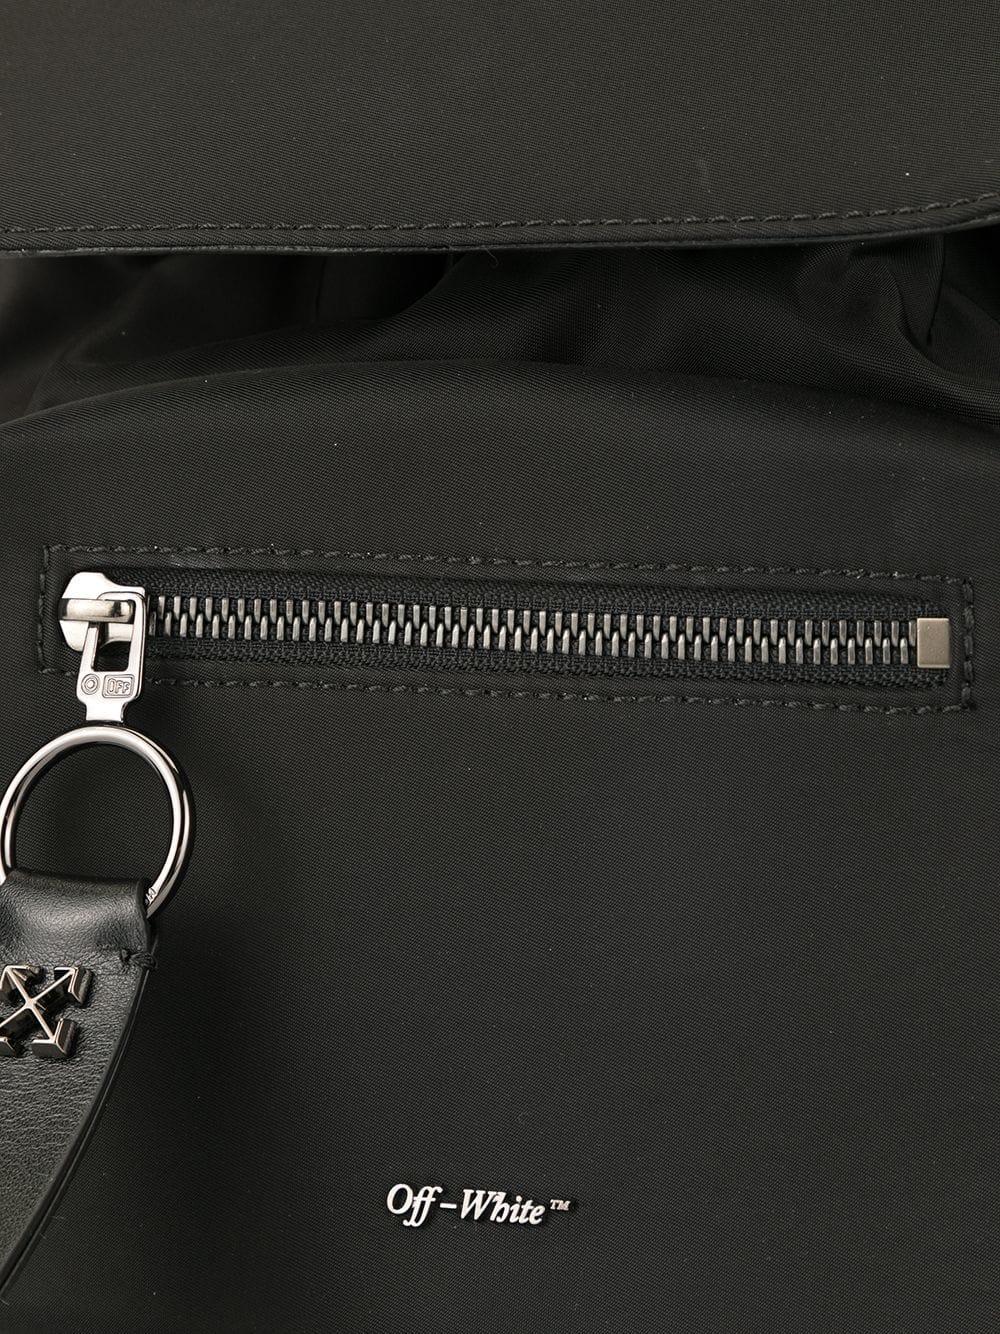 Off-White c/o Virgil Abloh Mini Backpack in Black - Lyst